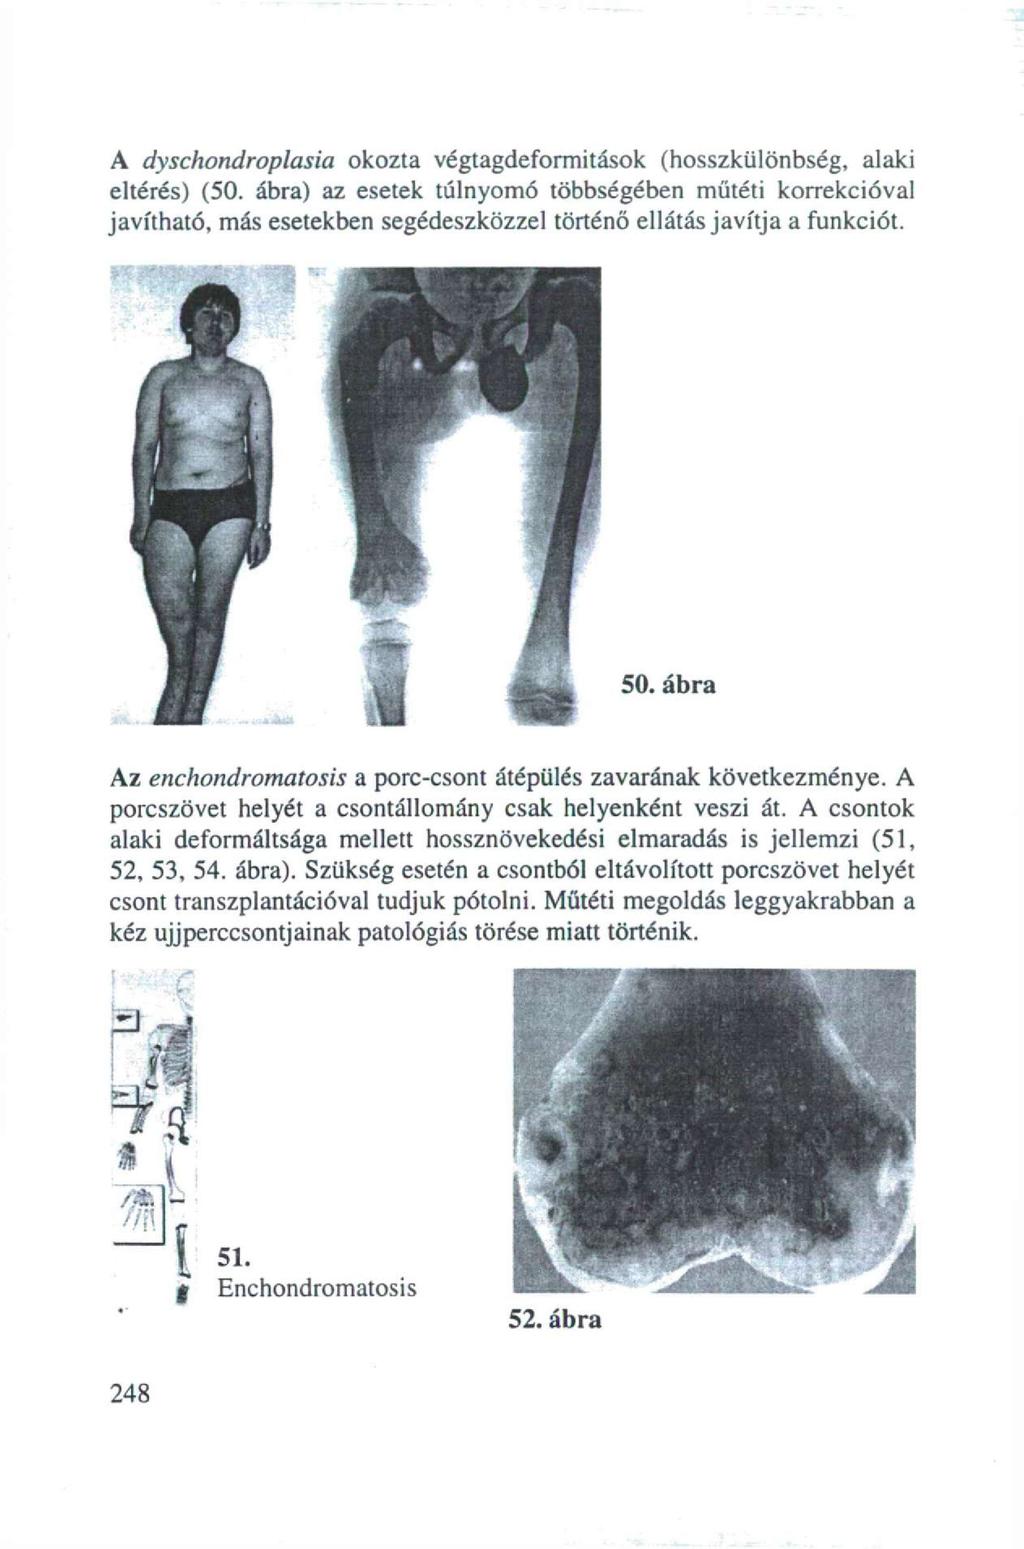 A dyschondroplasia okozta végtagdeformitások (hosszküiönbség, alaki eltérés) (50.